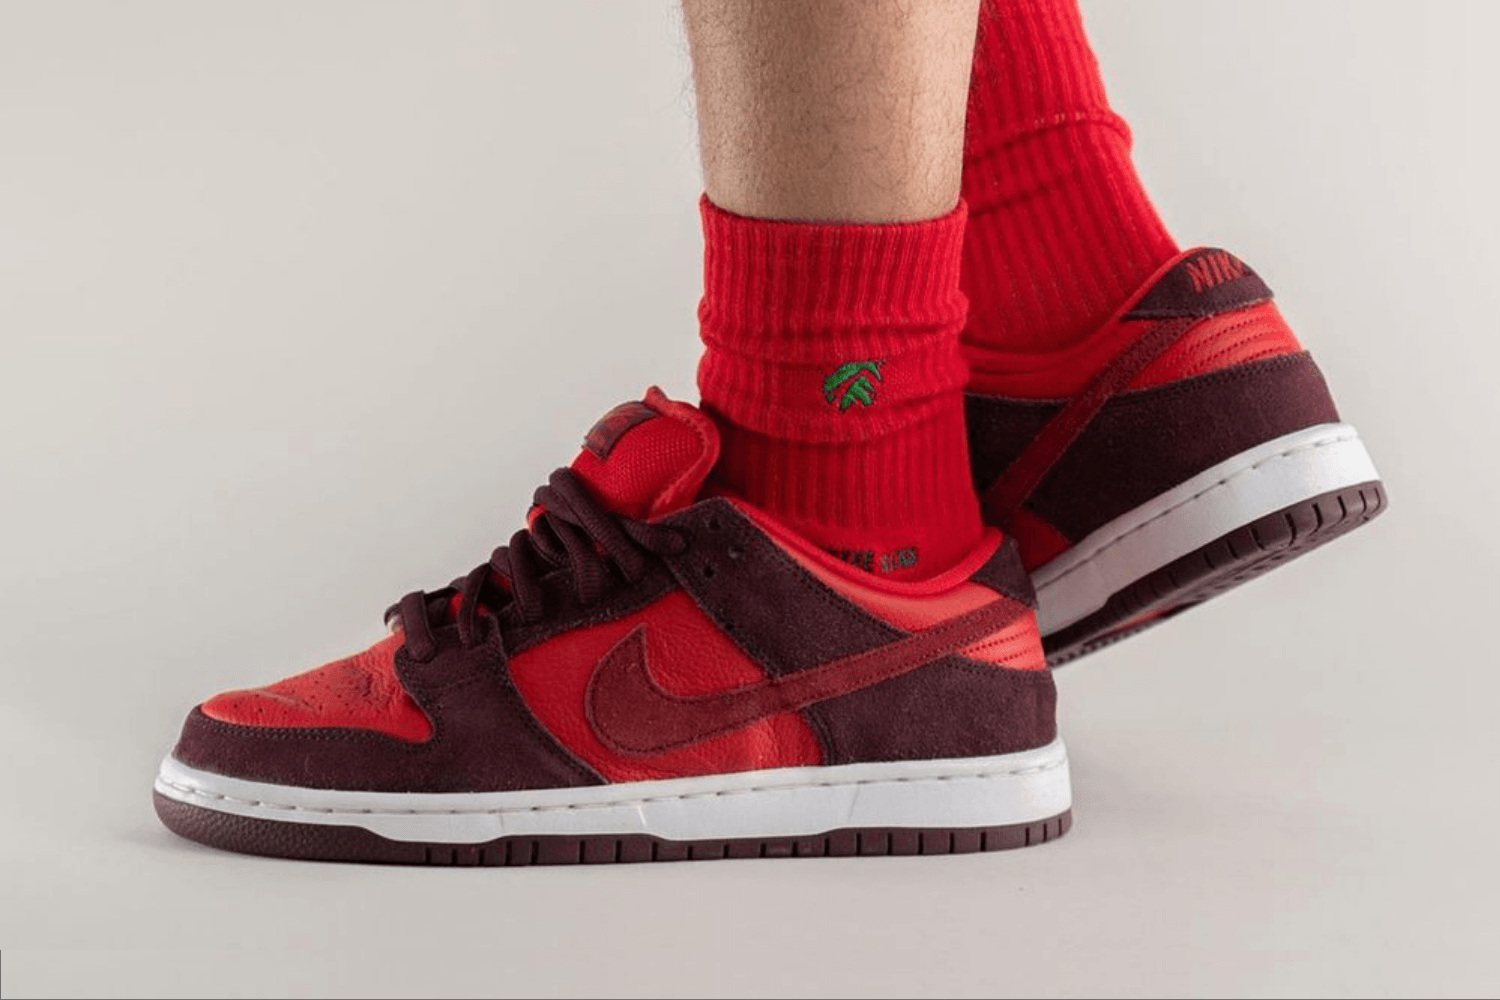 De Nike SB Dunk Low 'Cherry' wordt onderdeel van het Fruity Pack